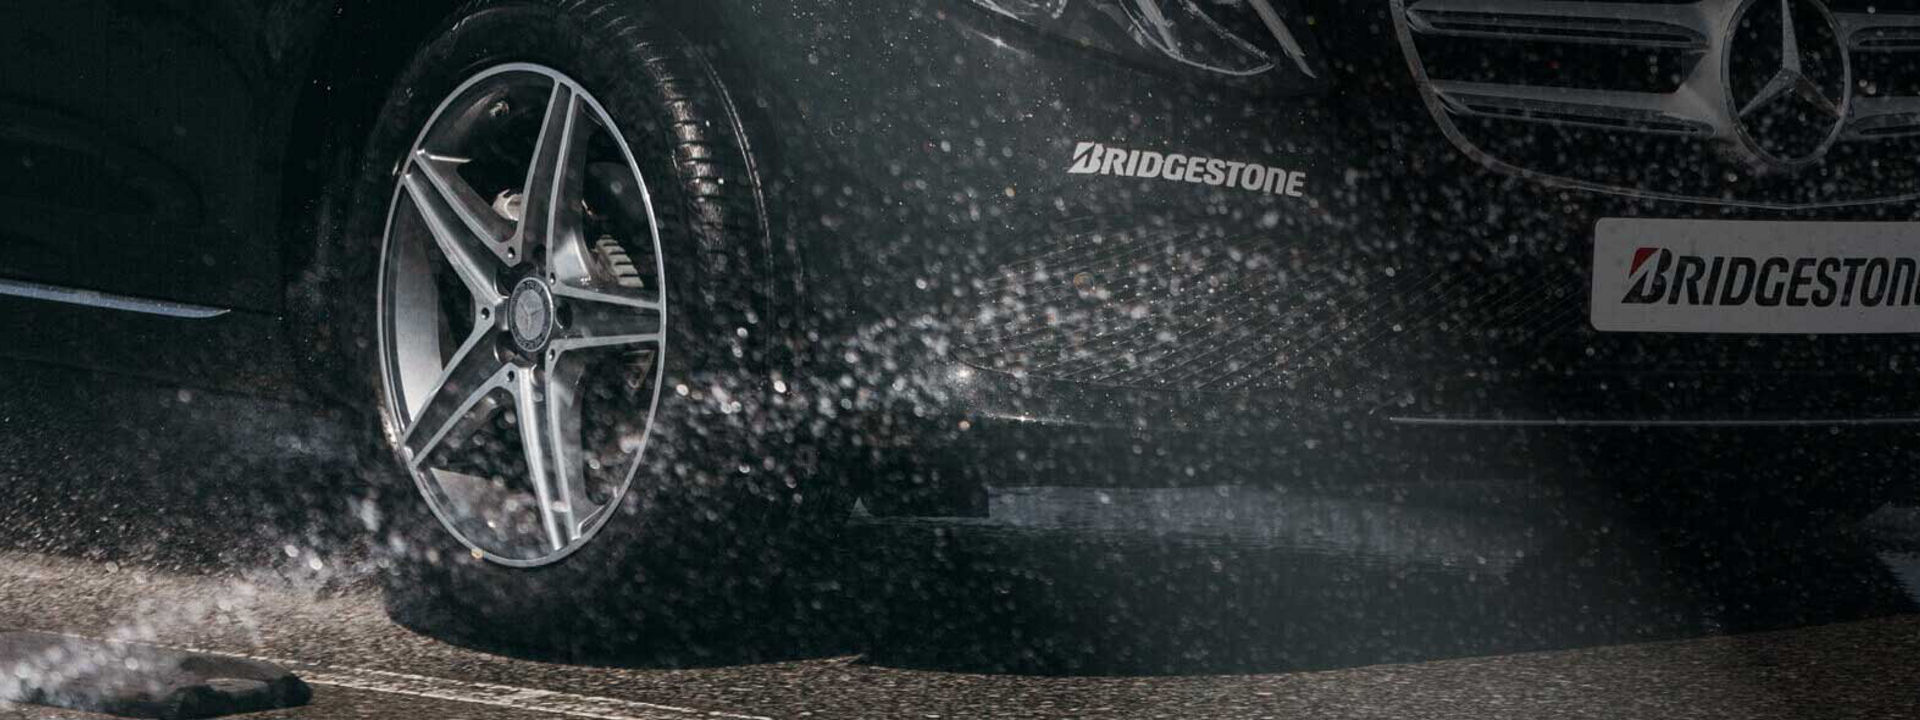 Cette image est un gros plan d’un pneu Turanza de Bridgestone roulant dans des conditions humides